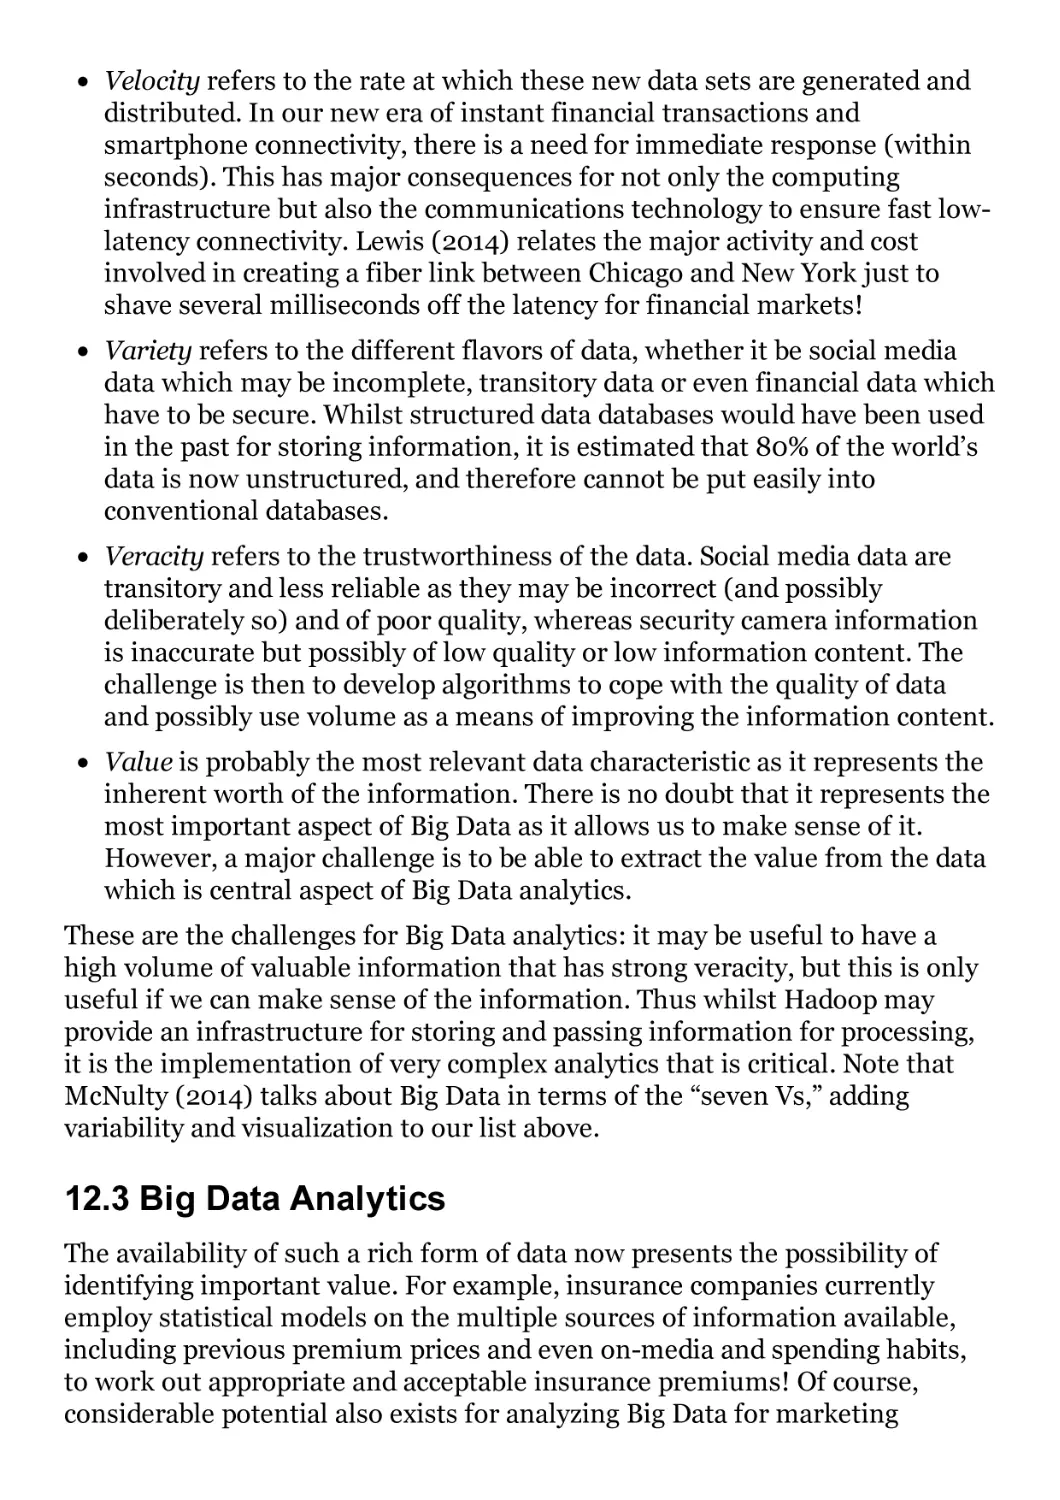 12.3 Big Data Analytics